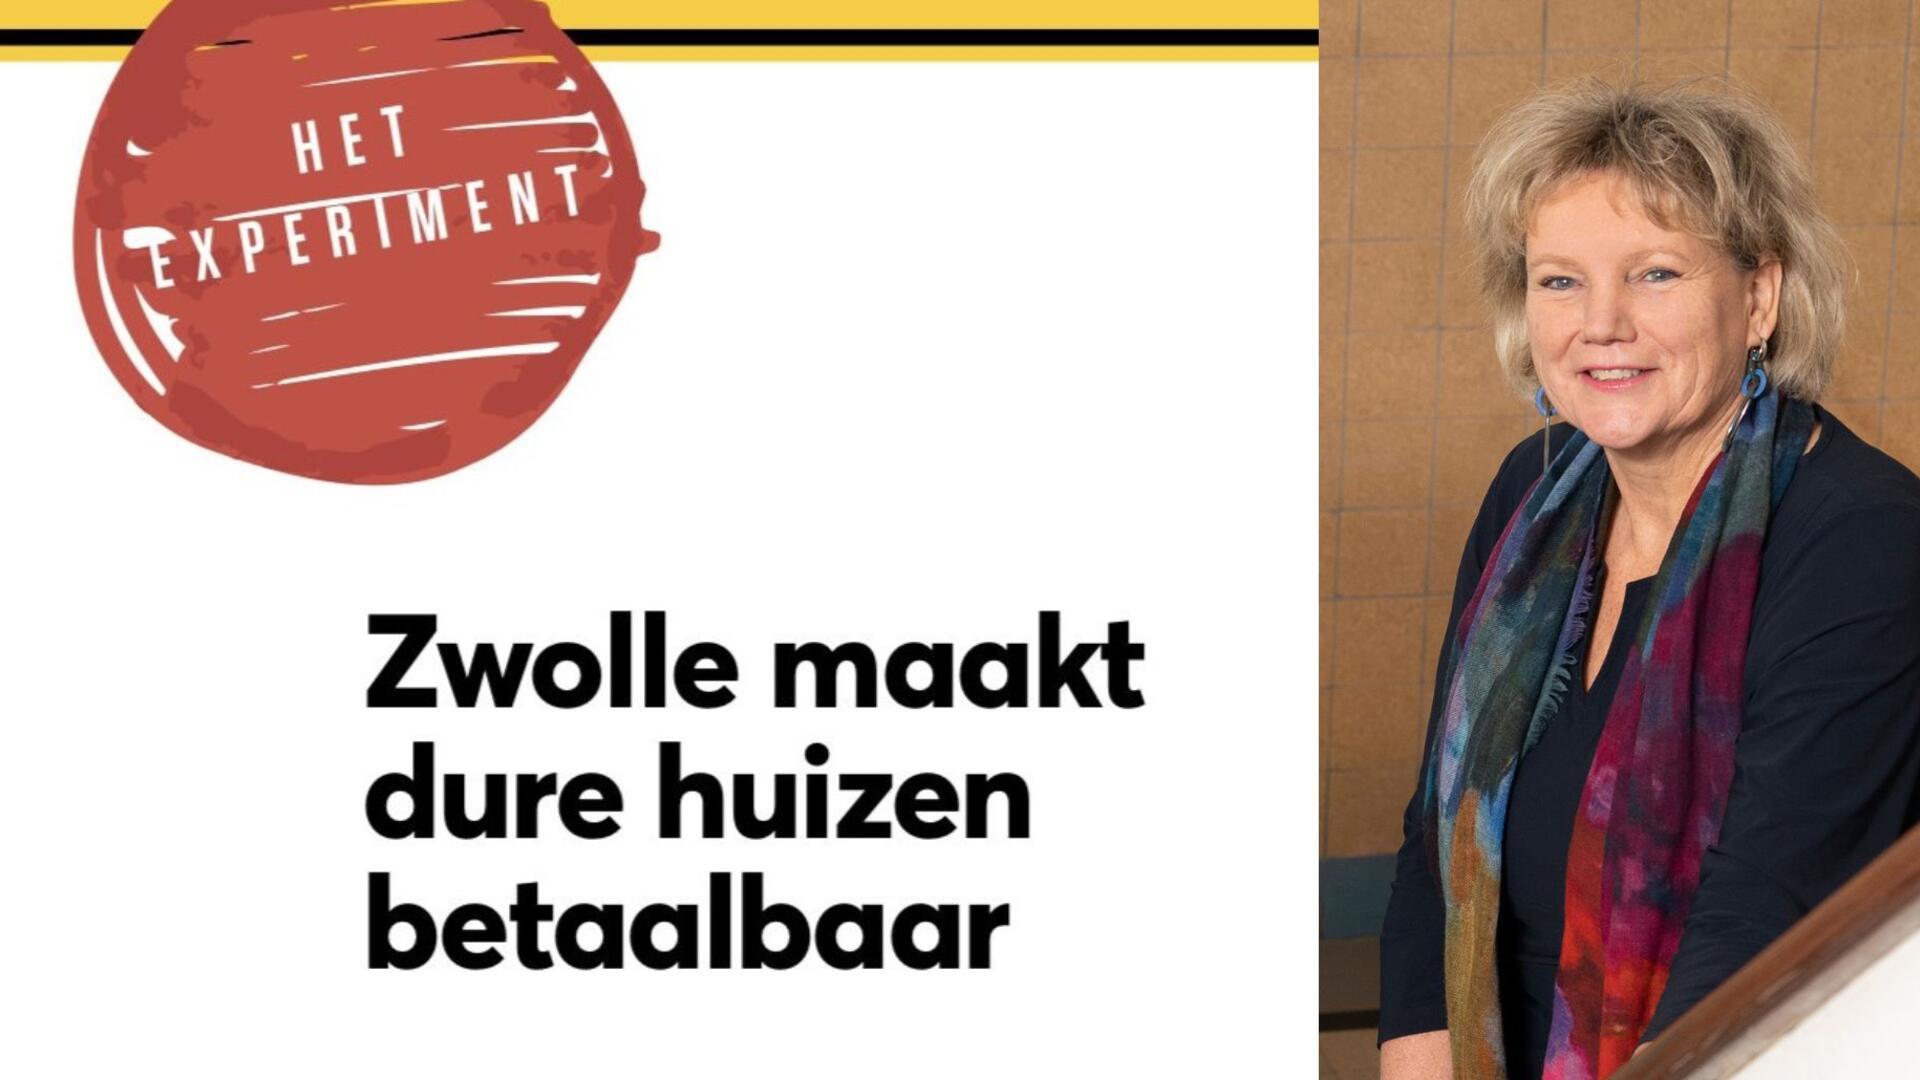 De tekst 'het experiment - Zwolle maakt dure huizen betaalbaar' naast een foto van wethouder Schuttenbeld